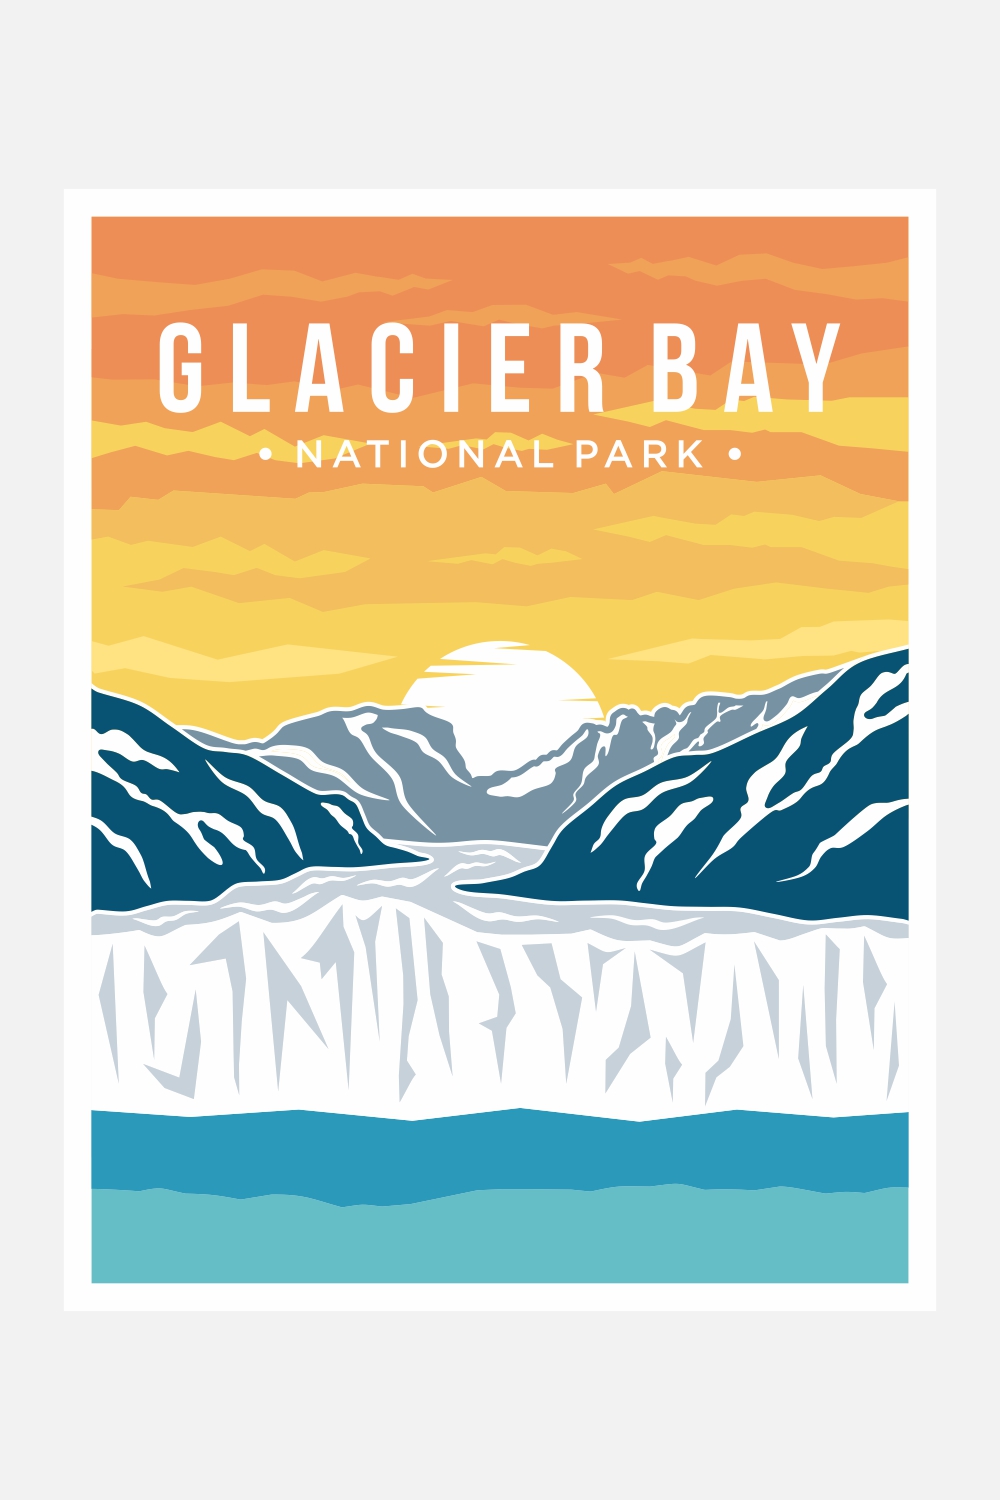 Glacier Bay National Park poster vector illustration design – Only $8 pinterest preview image.